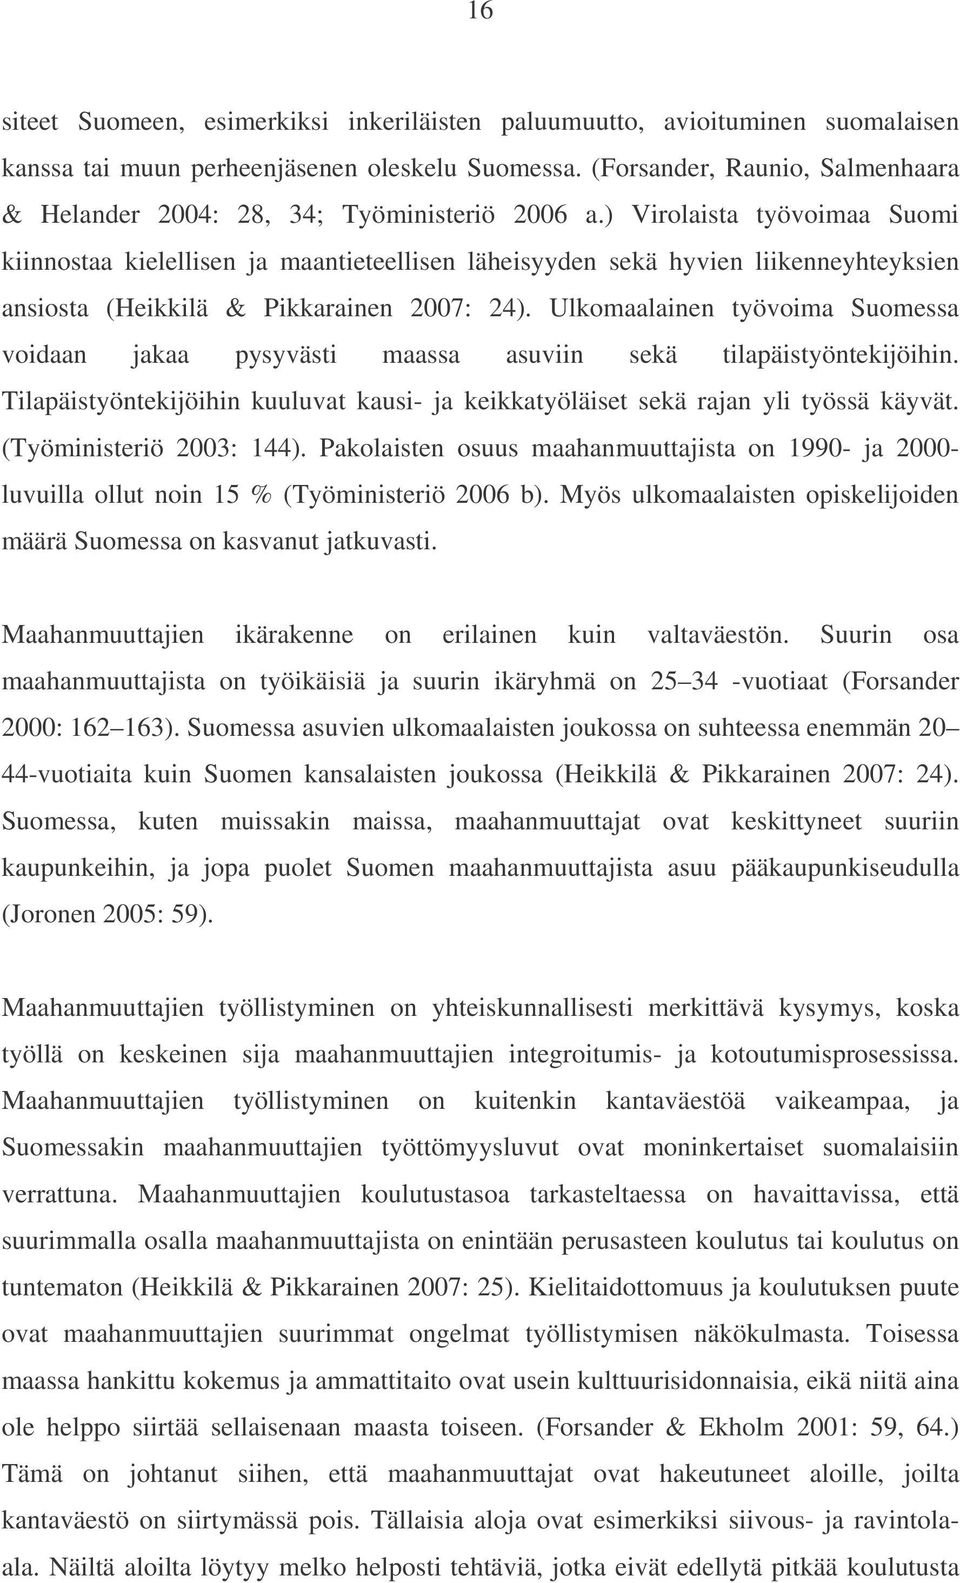 ) Virolaista työvoimaa Suomi kiinnostaa kielellisen ja maantieteellisen läheisyyden sekä hyvien liikenneyhteyksien ansiosta (Heikkilä & Pikkarainen 2007: 24).